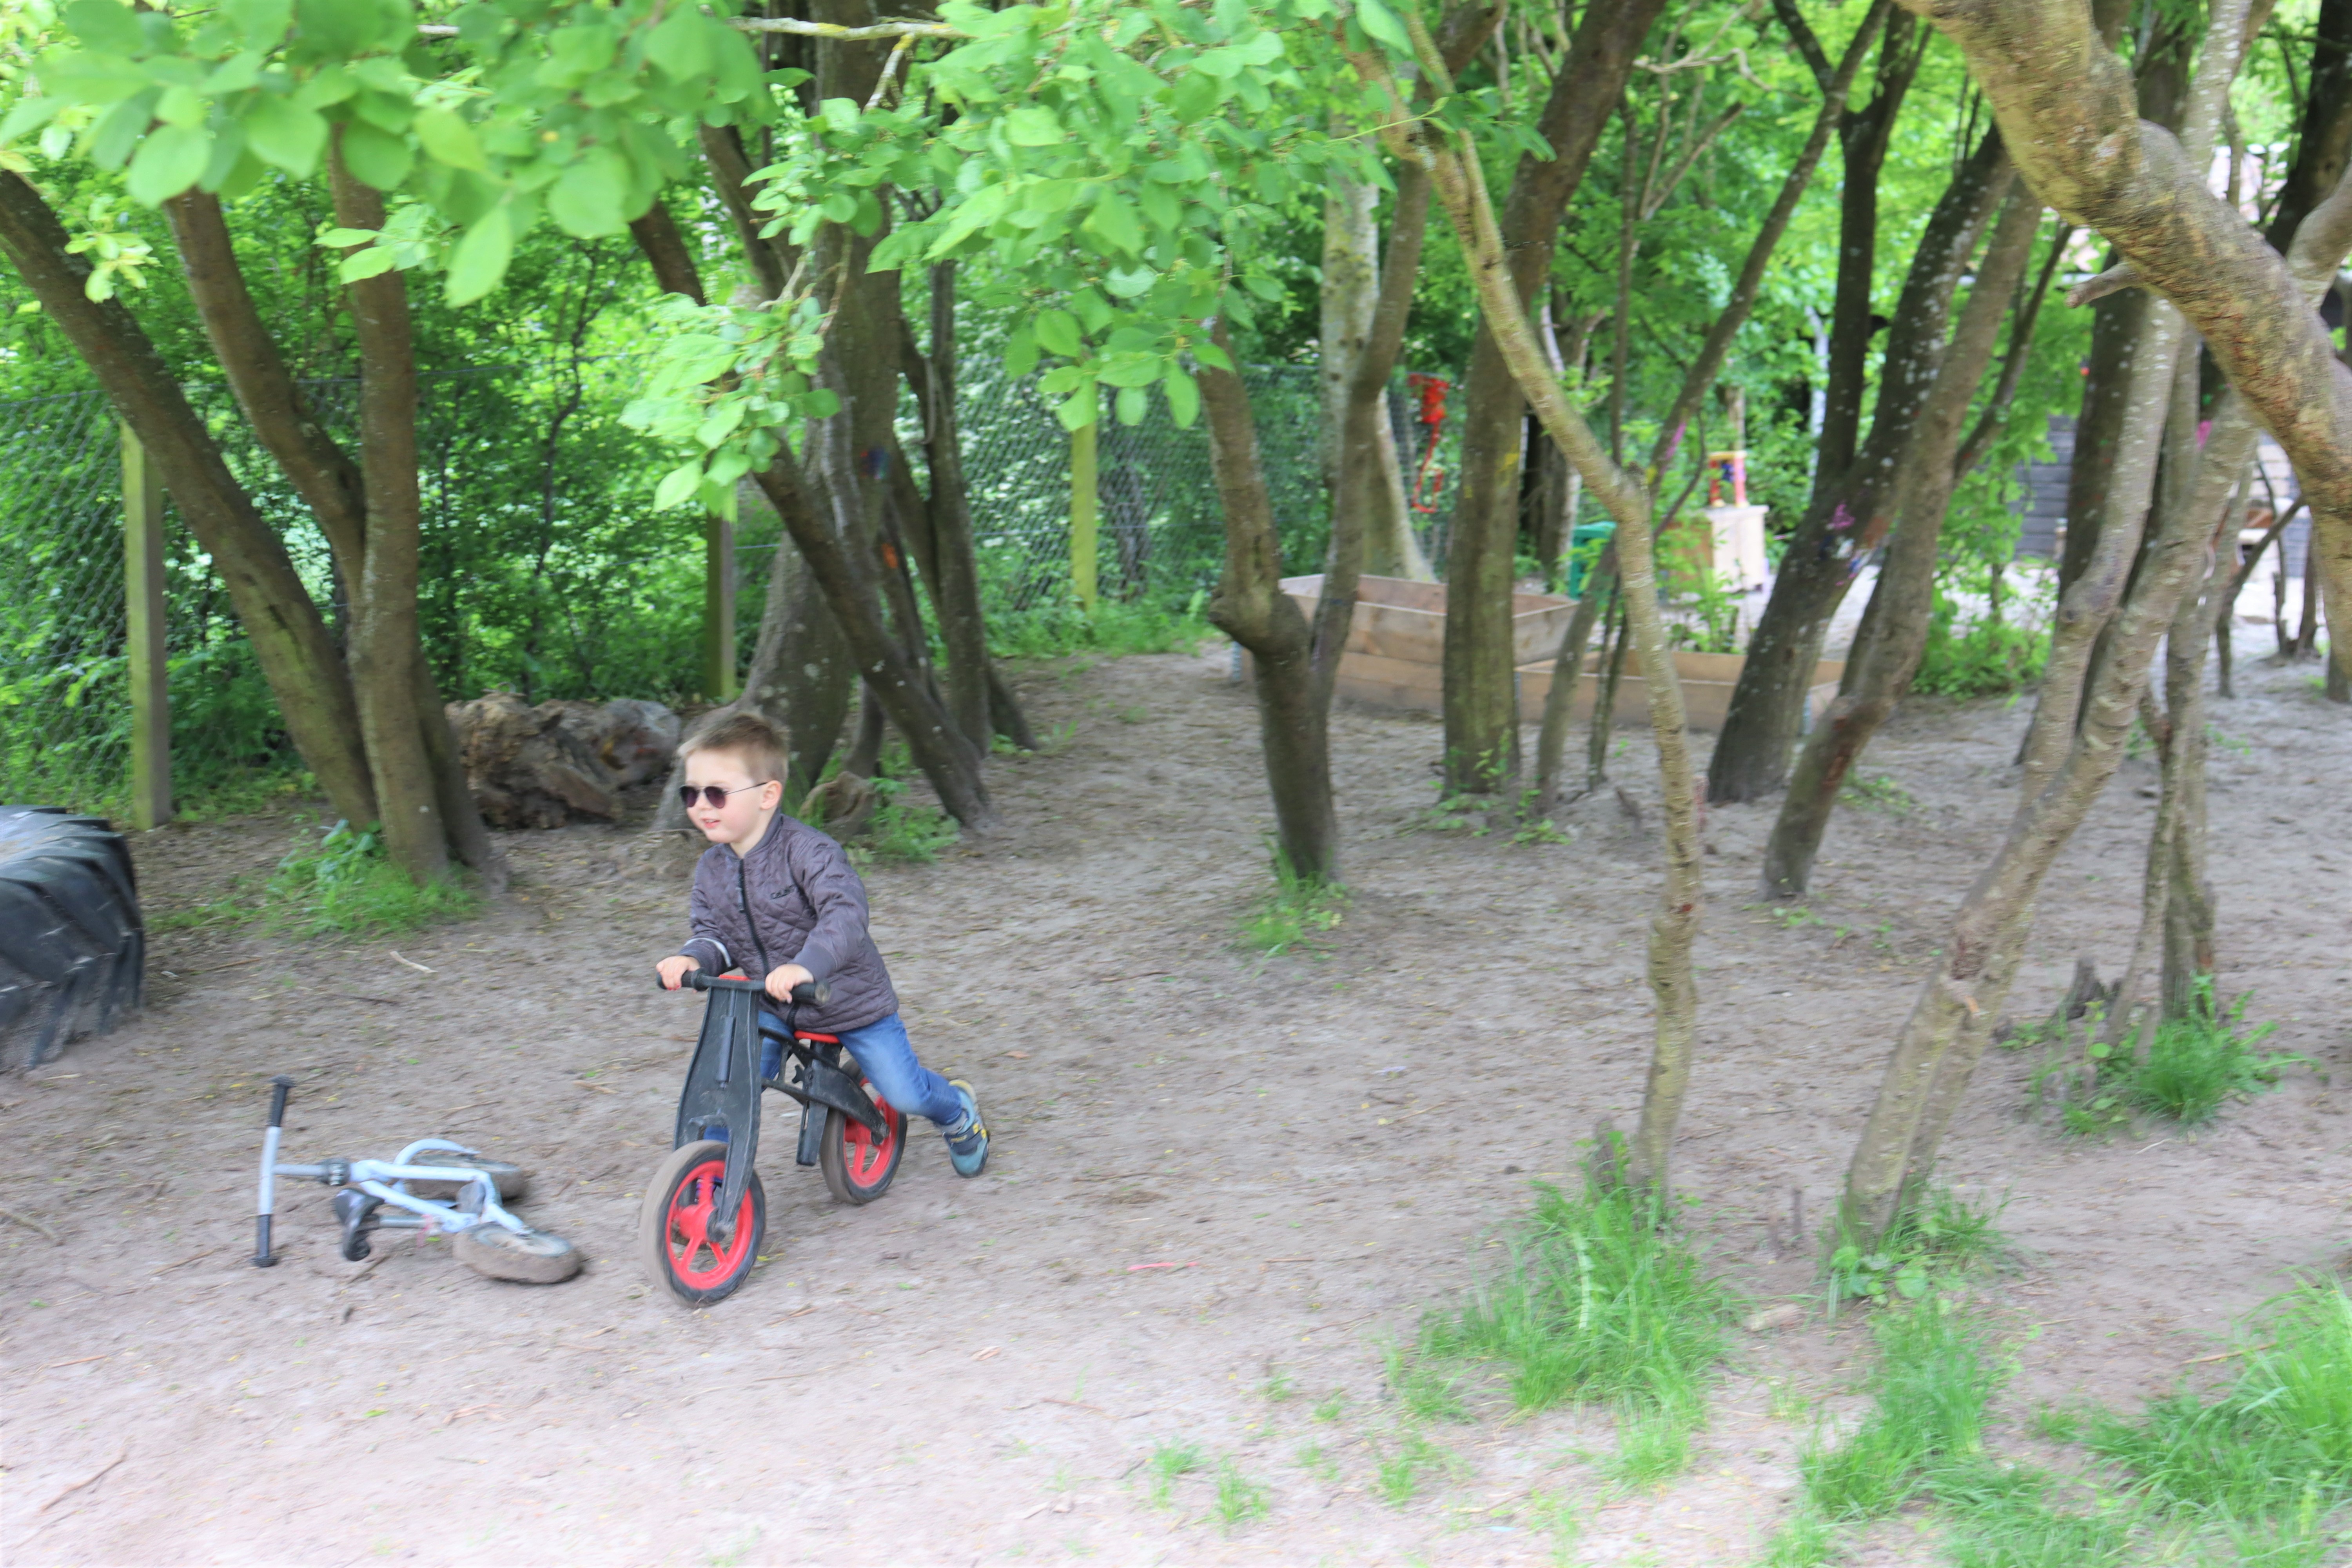 Dreng cykler på sti mellem træer i grønt område